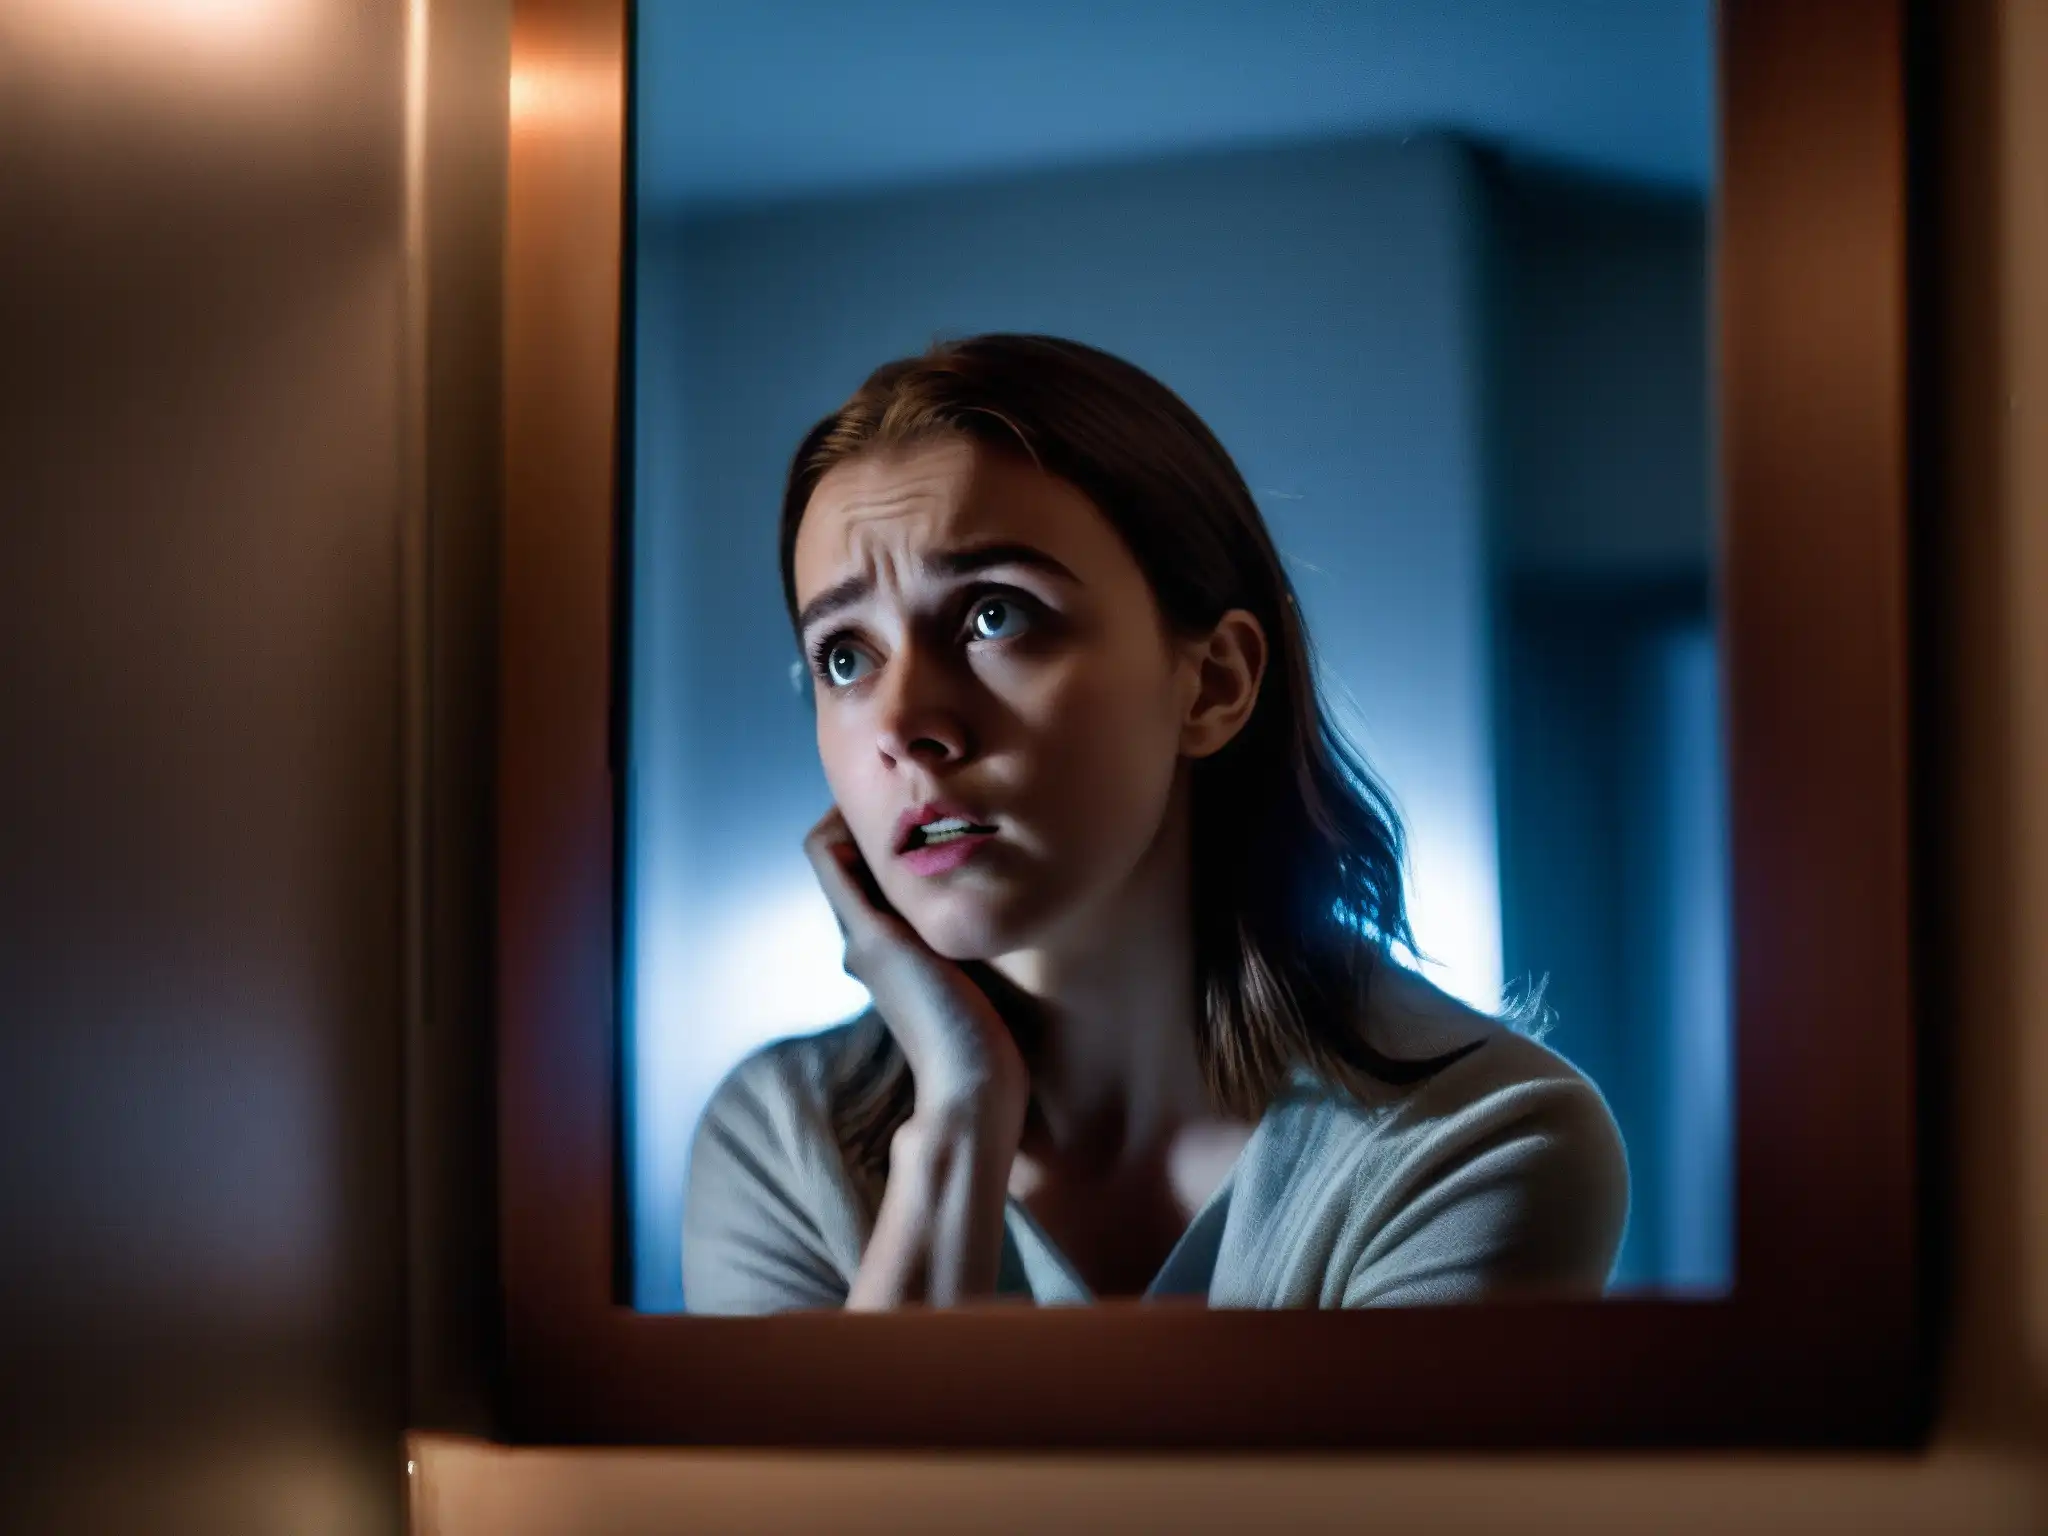 Una joven asustada mira al espejo en un baño oscuro, reflejando una figura fantasmal